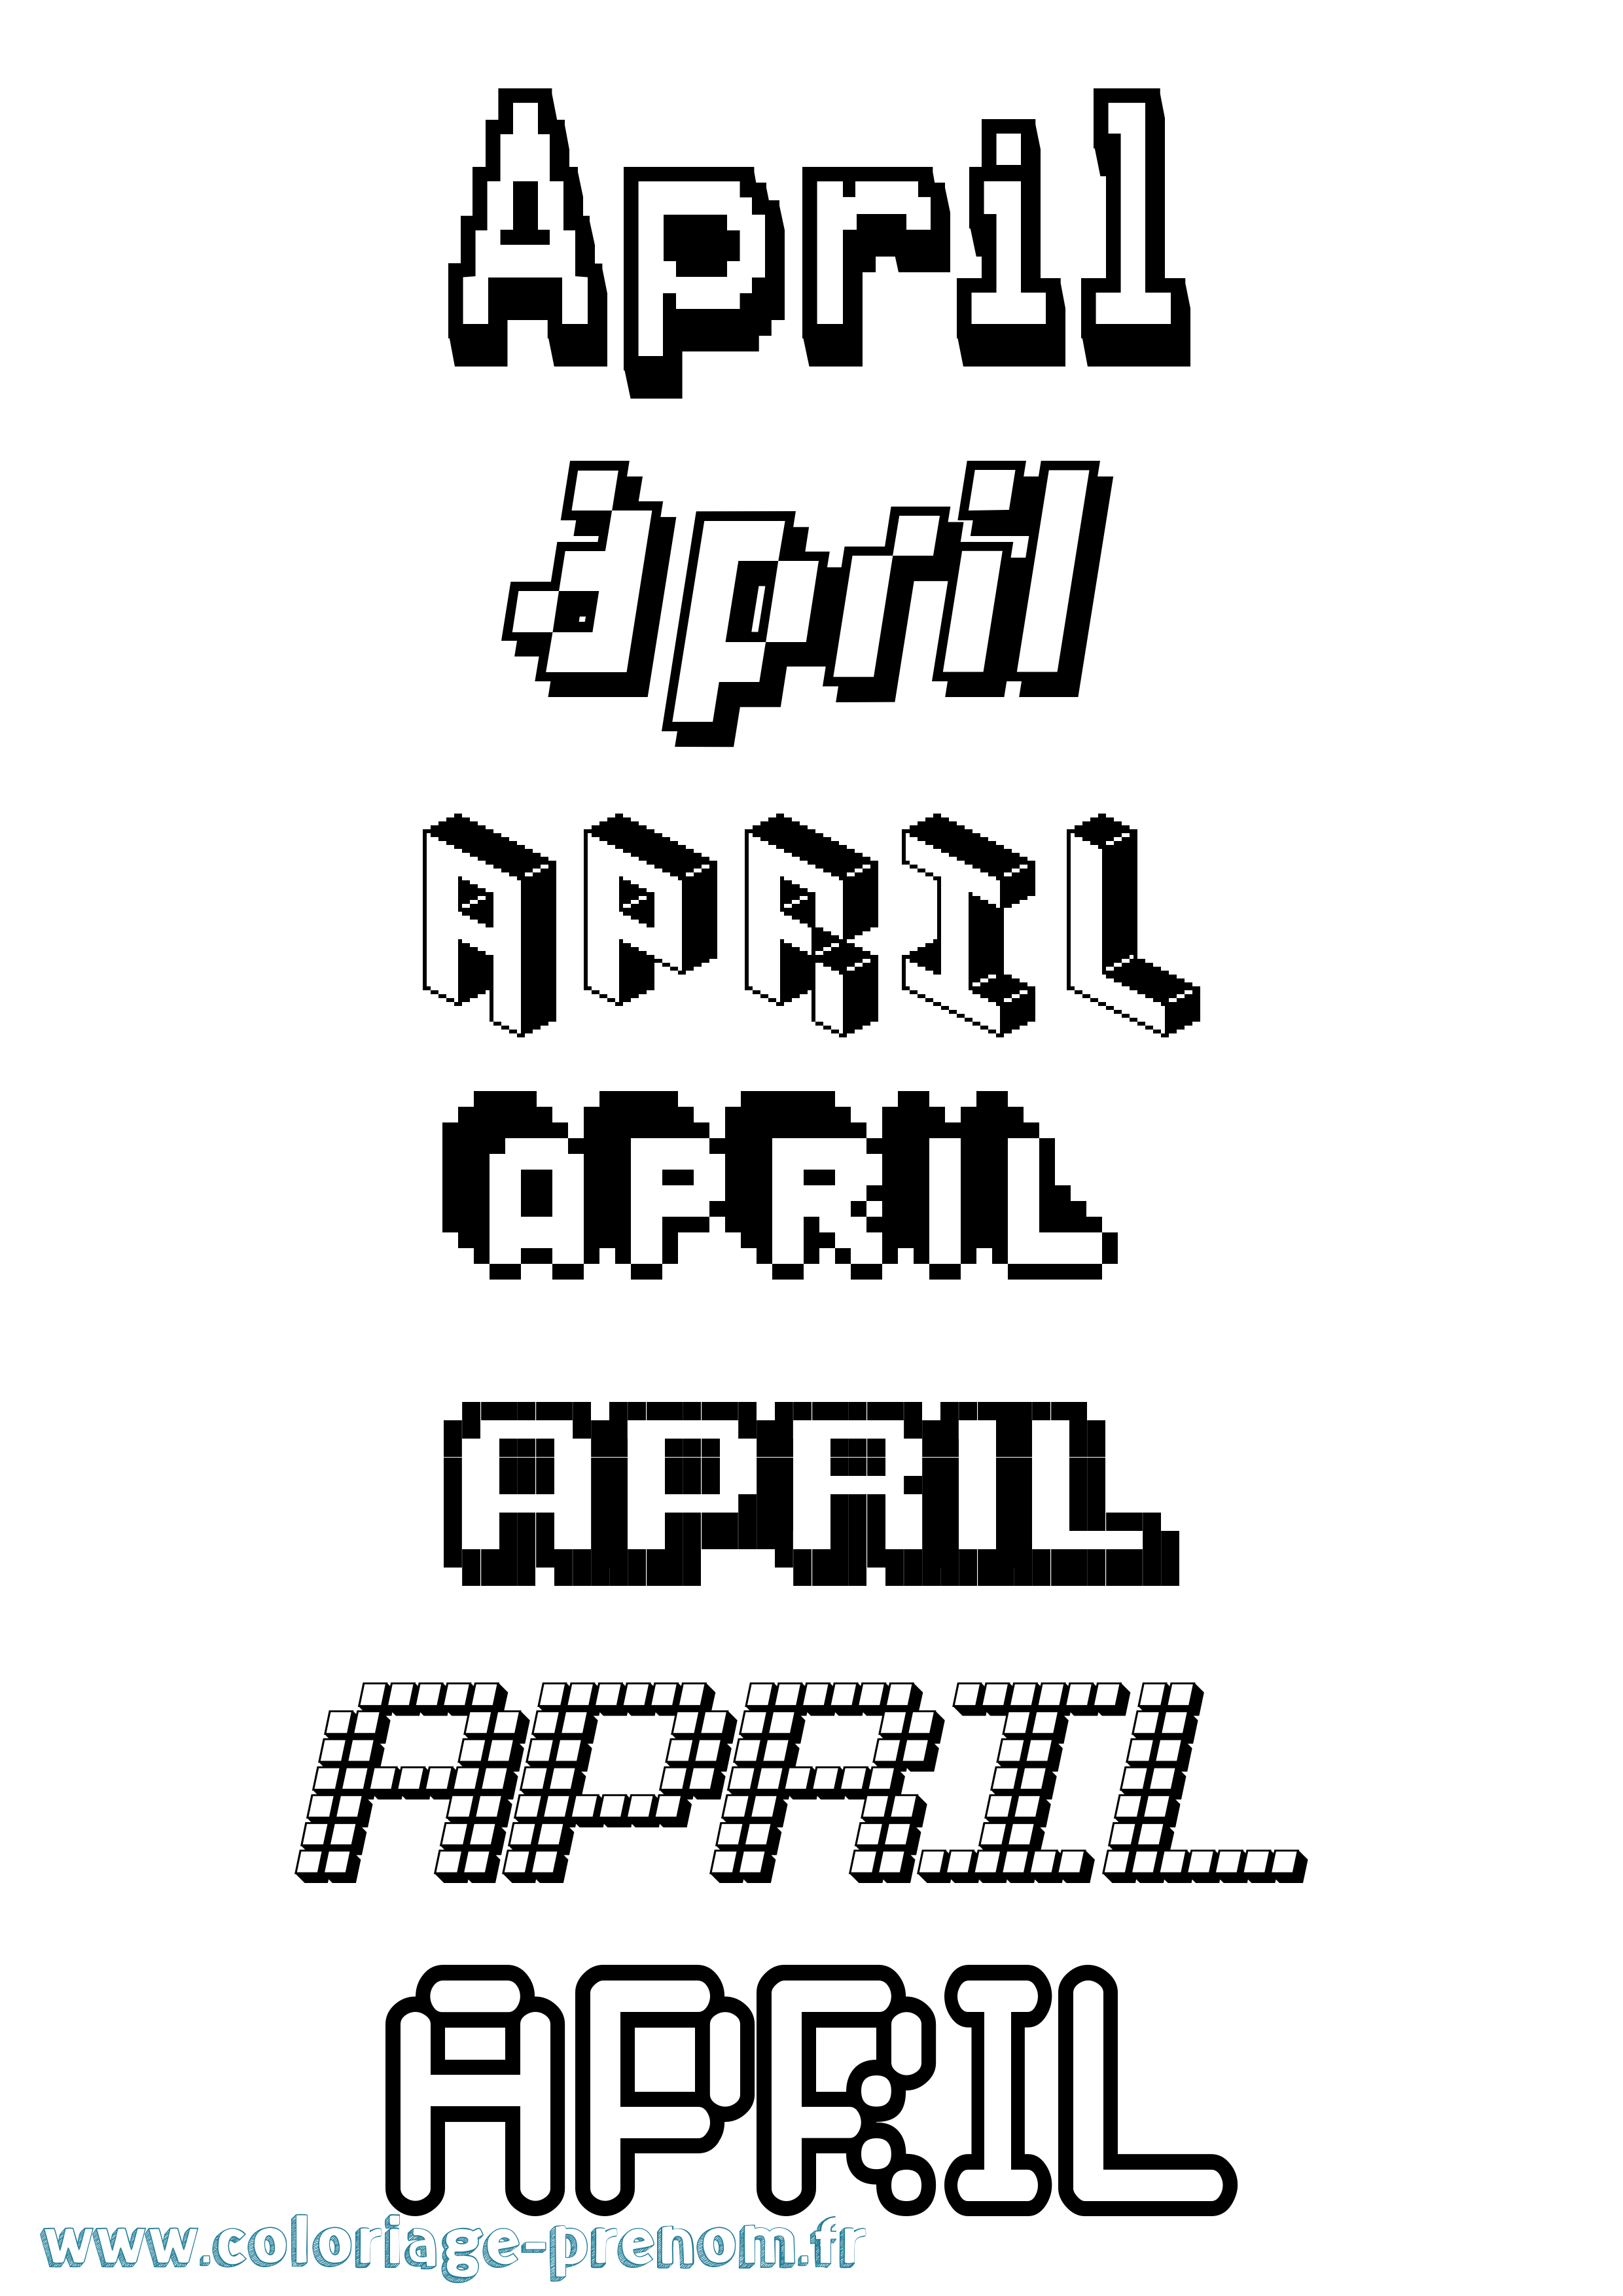 Coloriage prénom April Pixel